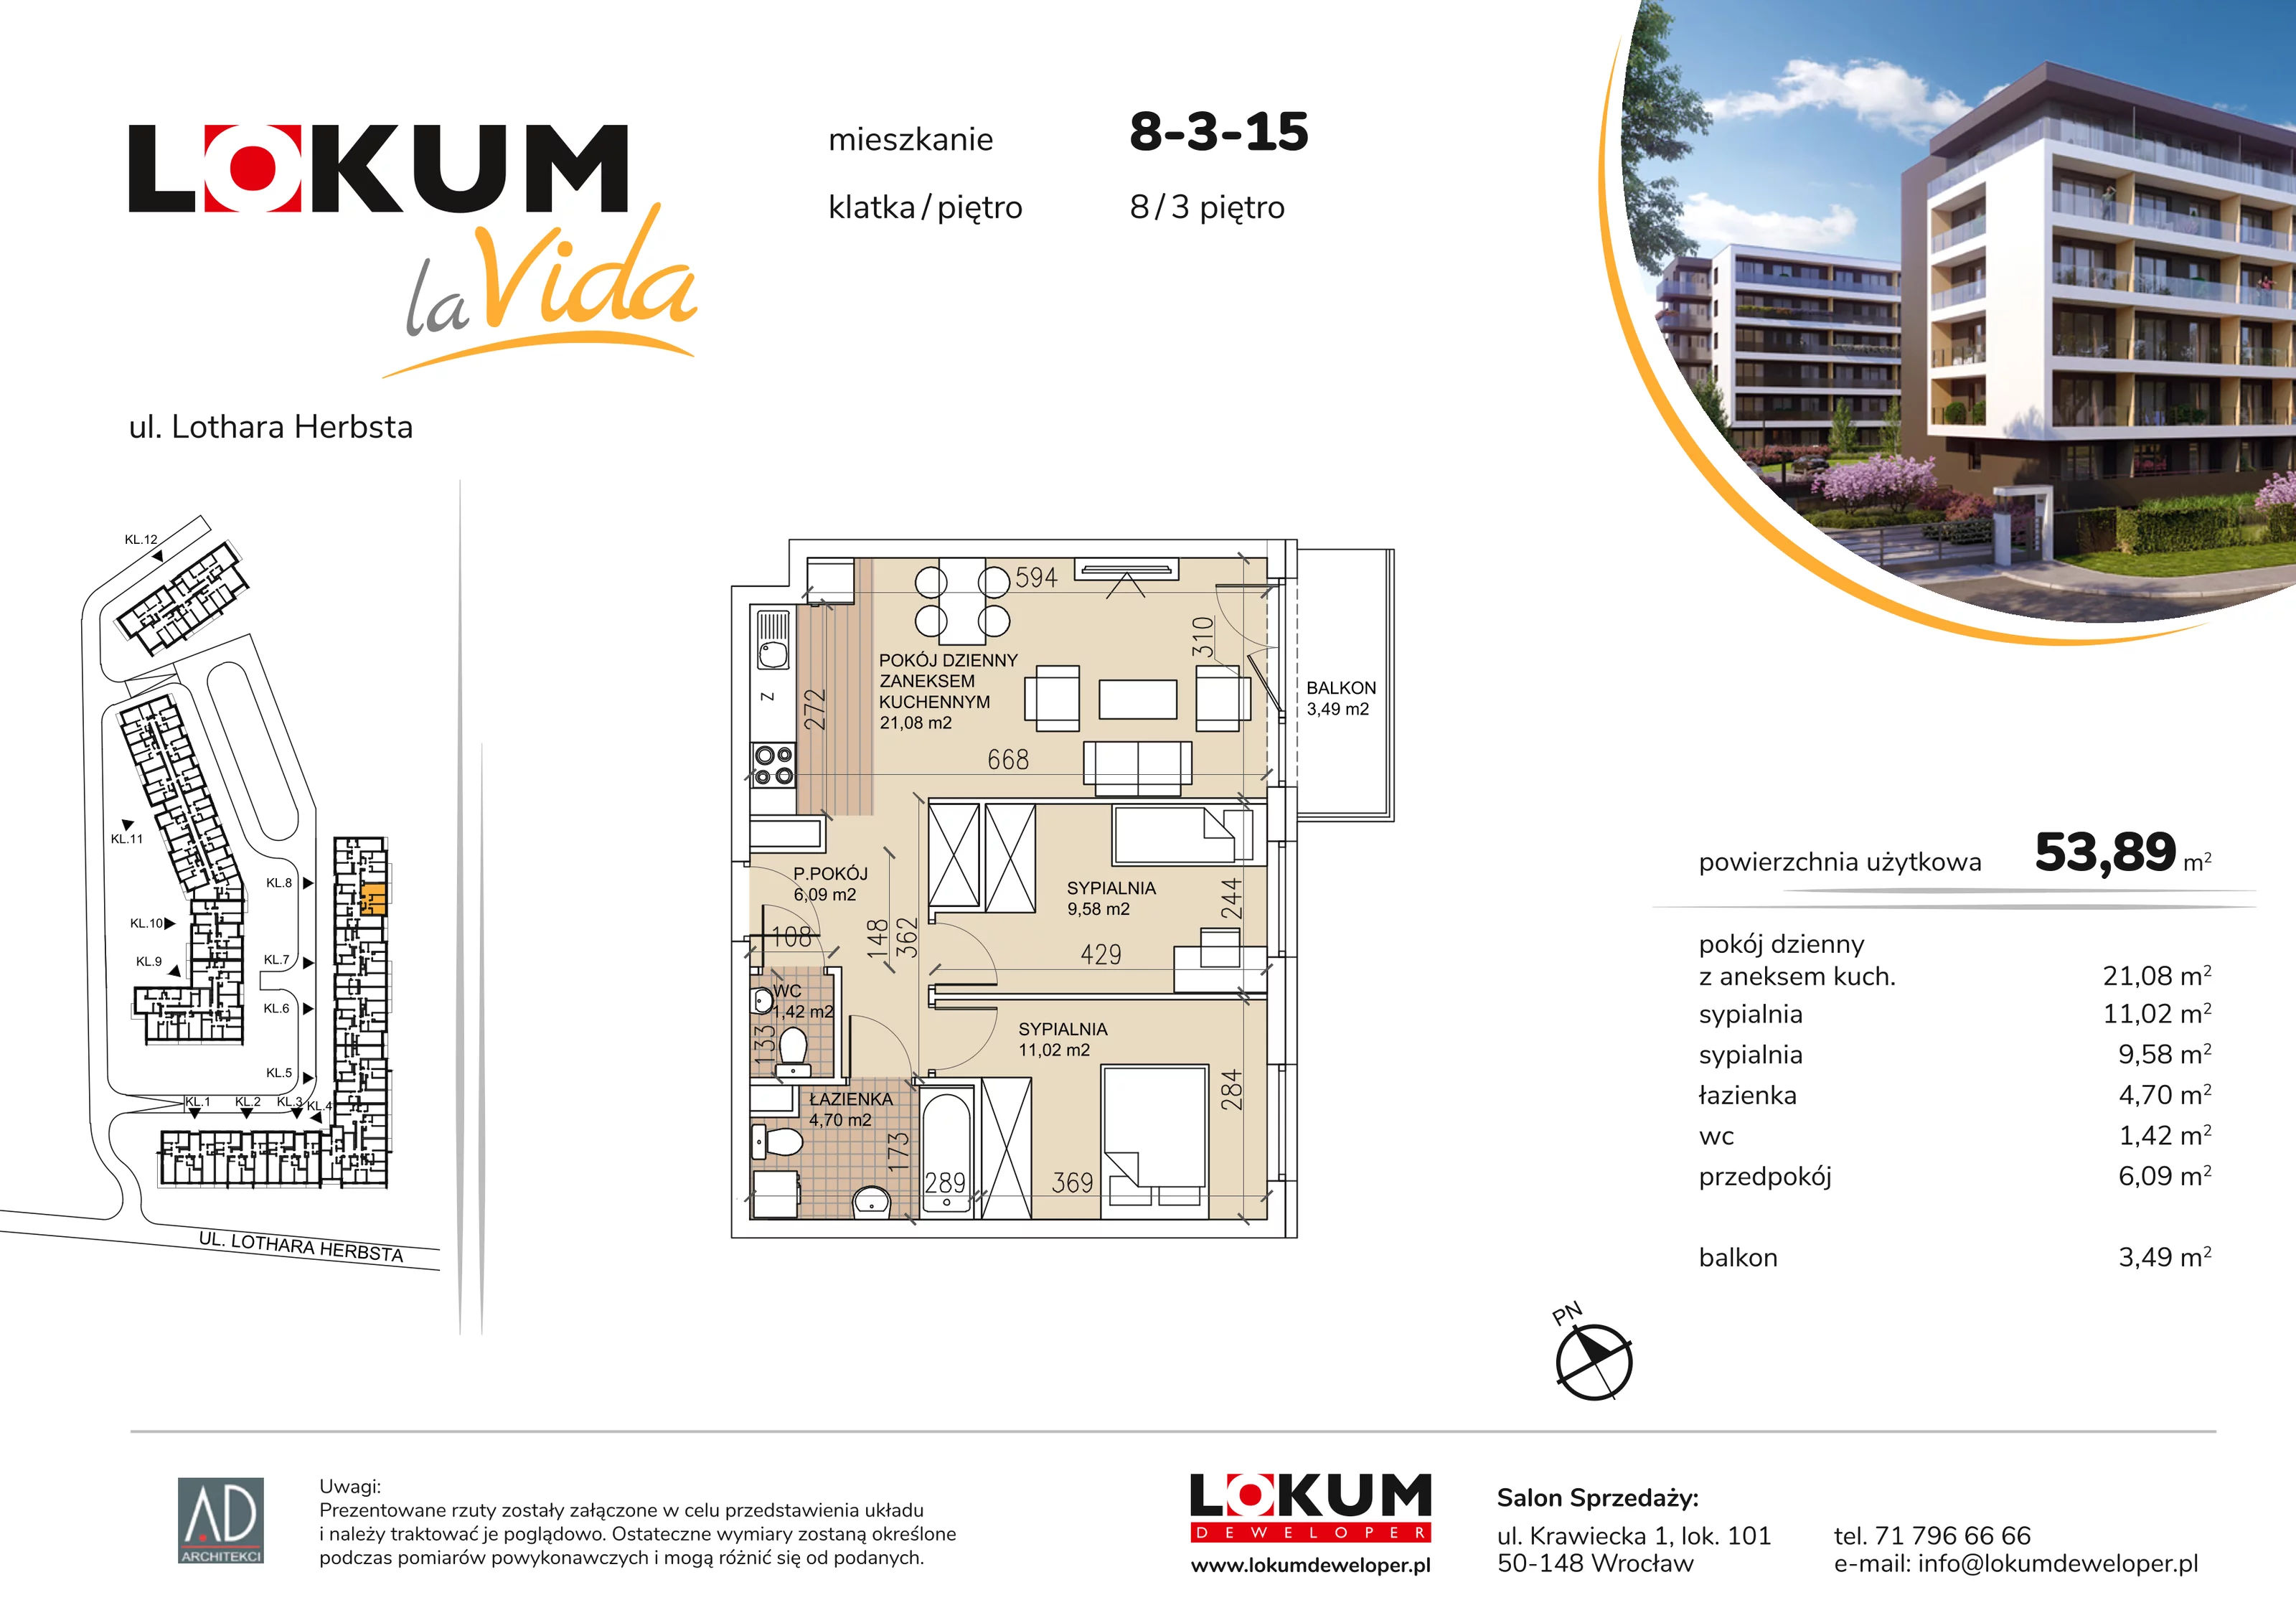 Mieszkanie 53,89 m², piętro 3, oferta nr 8-3-15, Lokum la Vida, Wrocław, Sołtysowice, ul. Lothara Herbsta